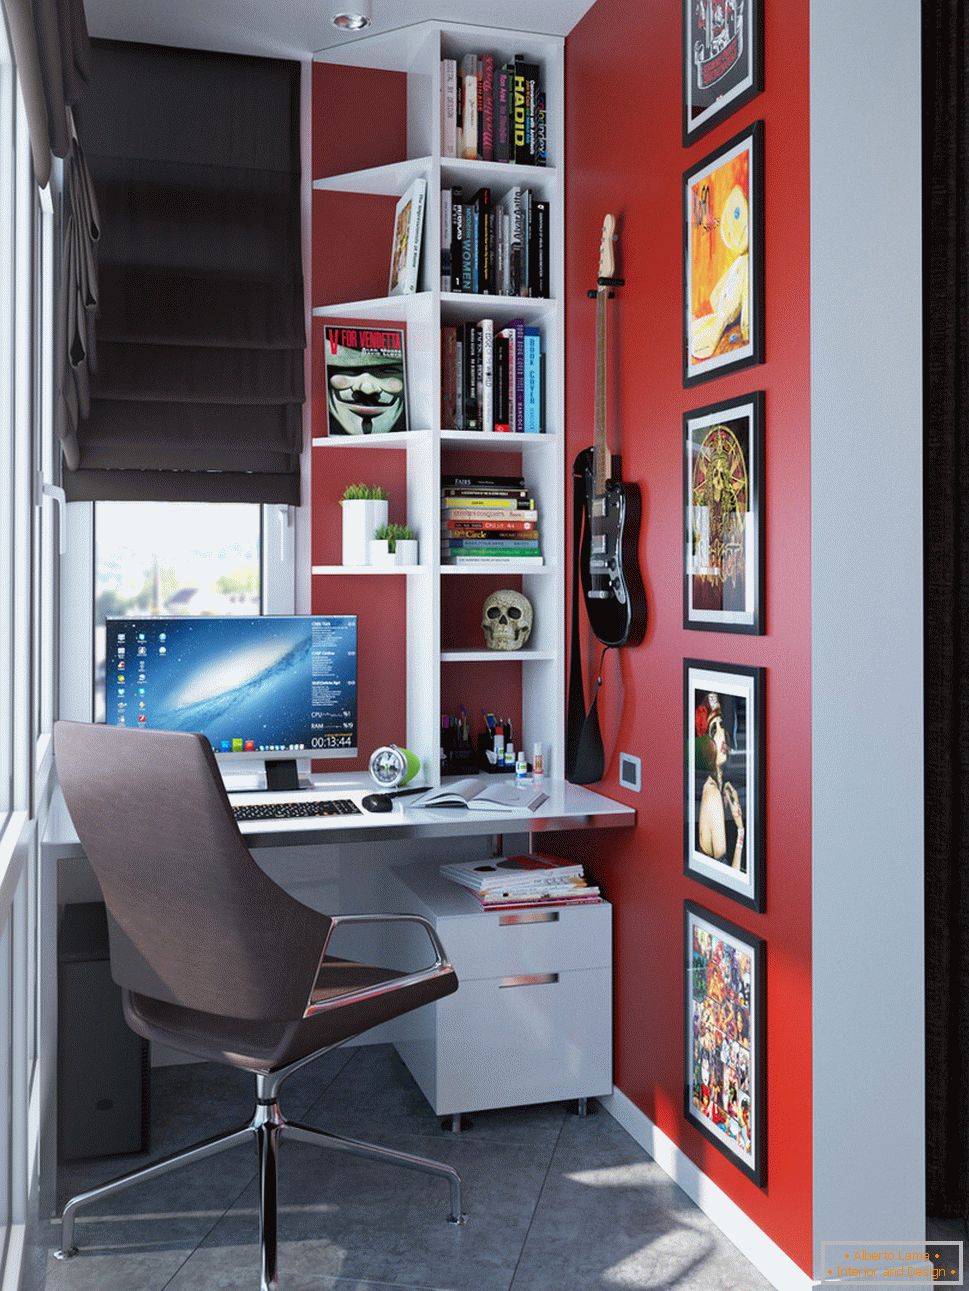 Wnętrze małego mieszkania w jasnych kolorach - кабинет